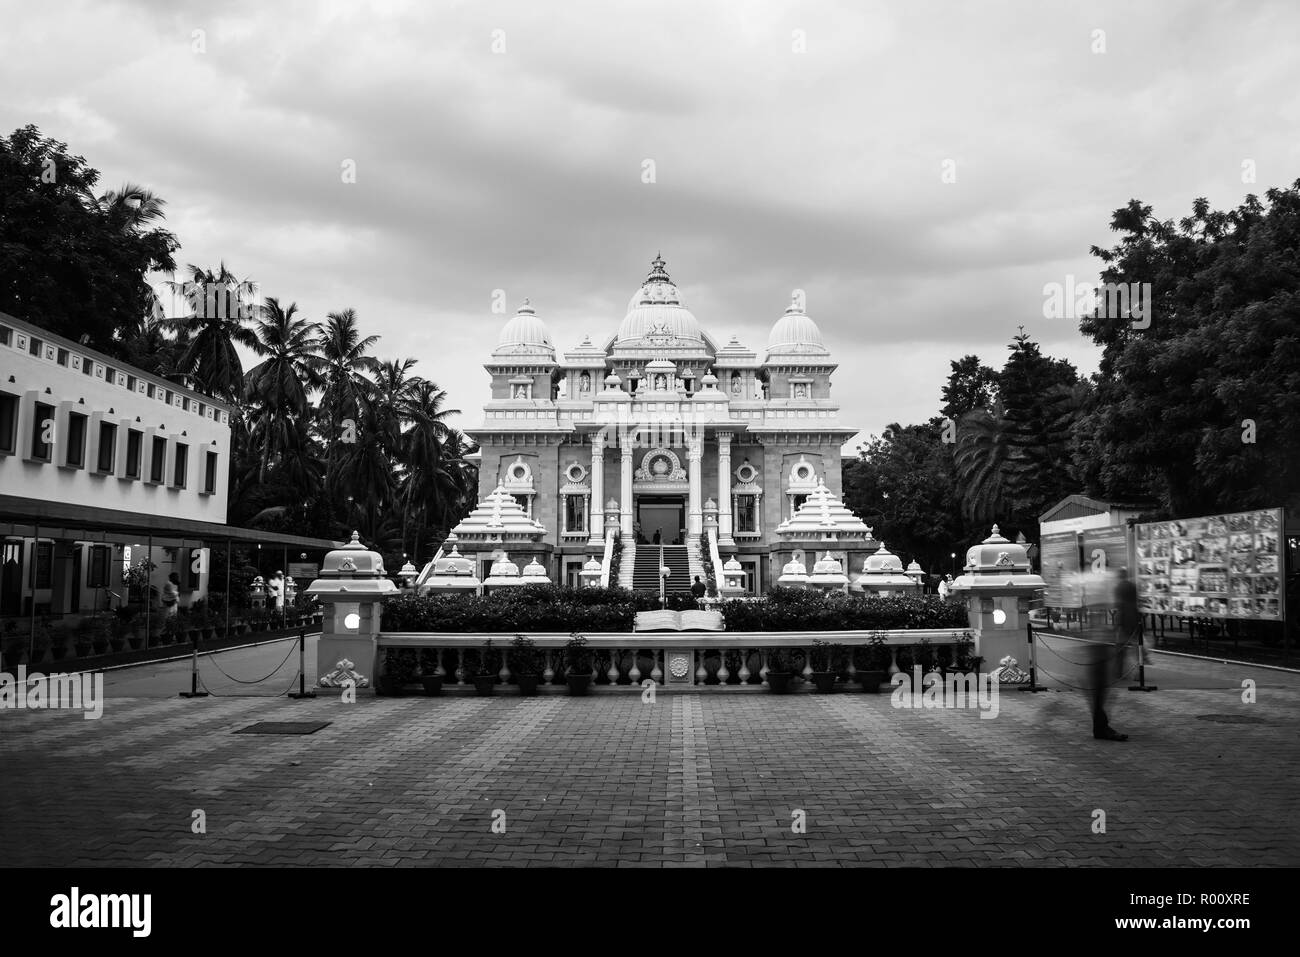 Sri Ramakrishna Math edificio storico di Chennai, nello Stato del Tamil Nadu, India in serata con cielo nuvoloso Foto Stock